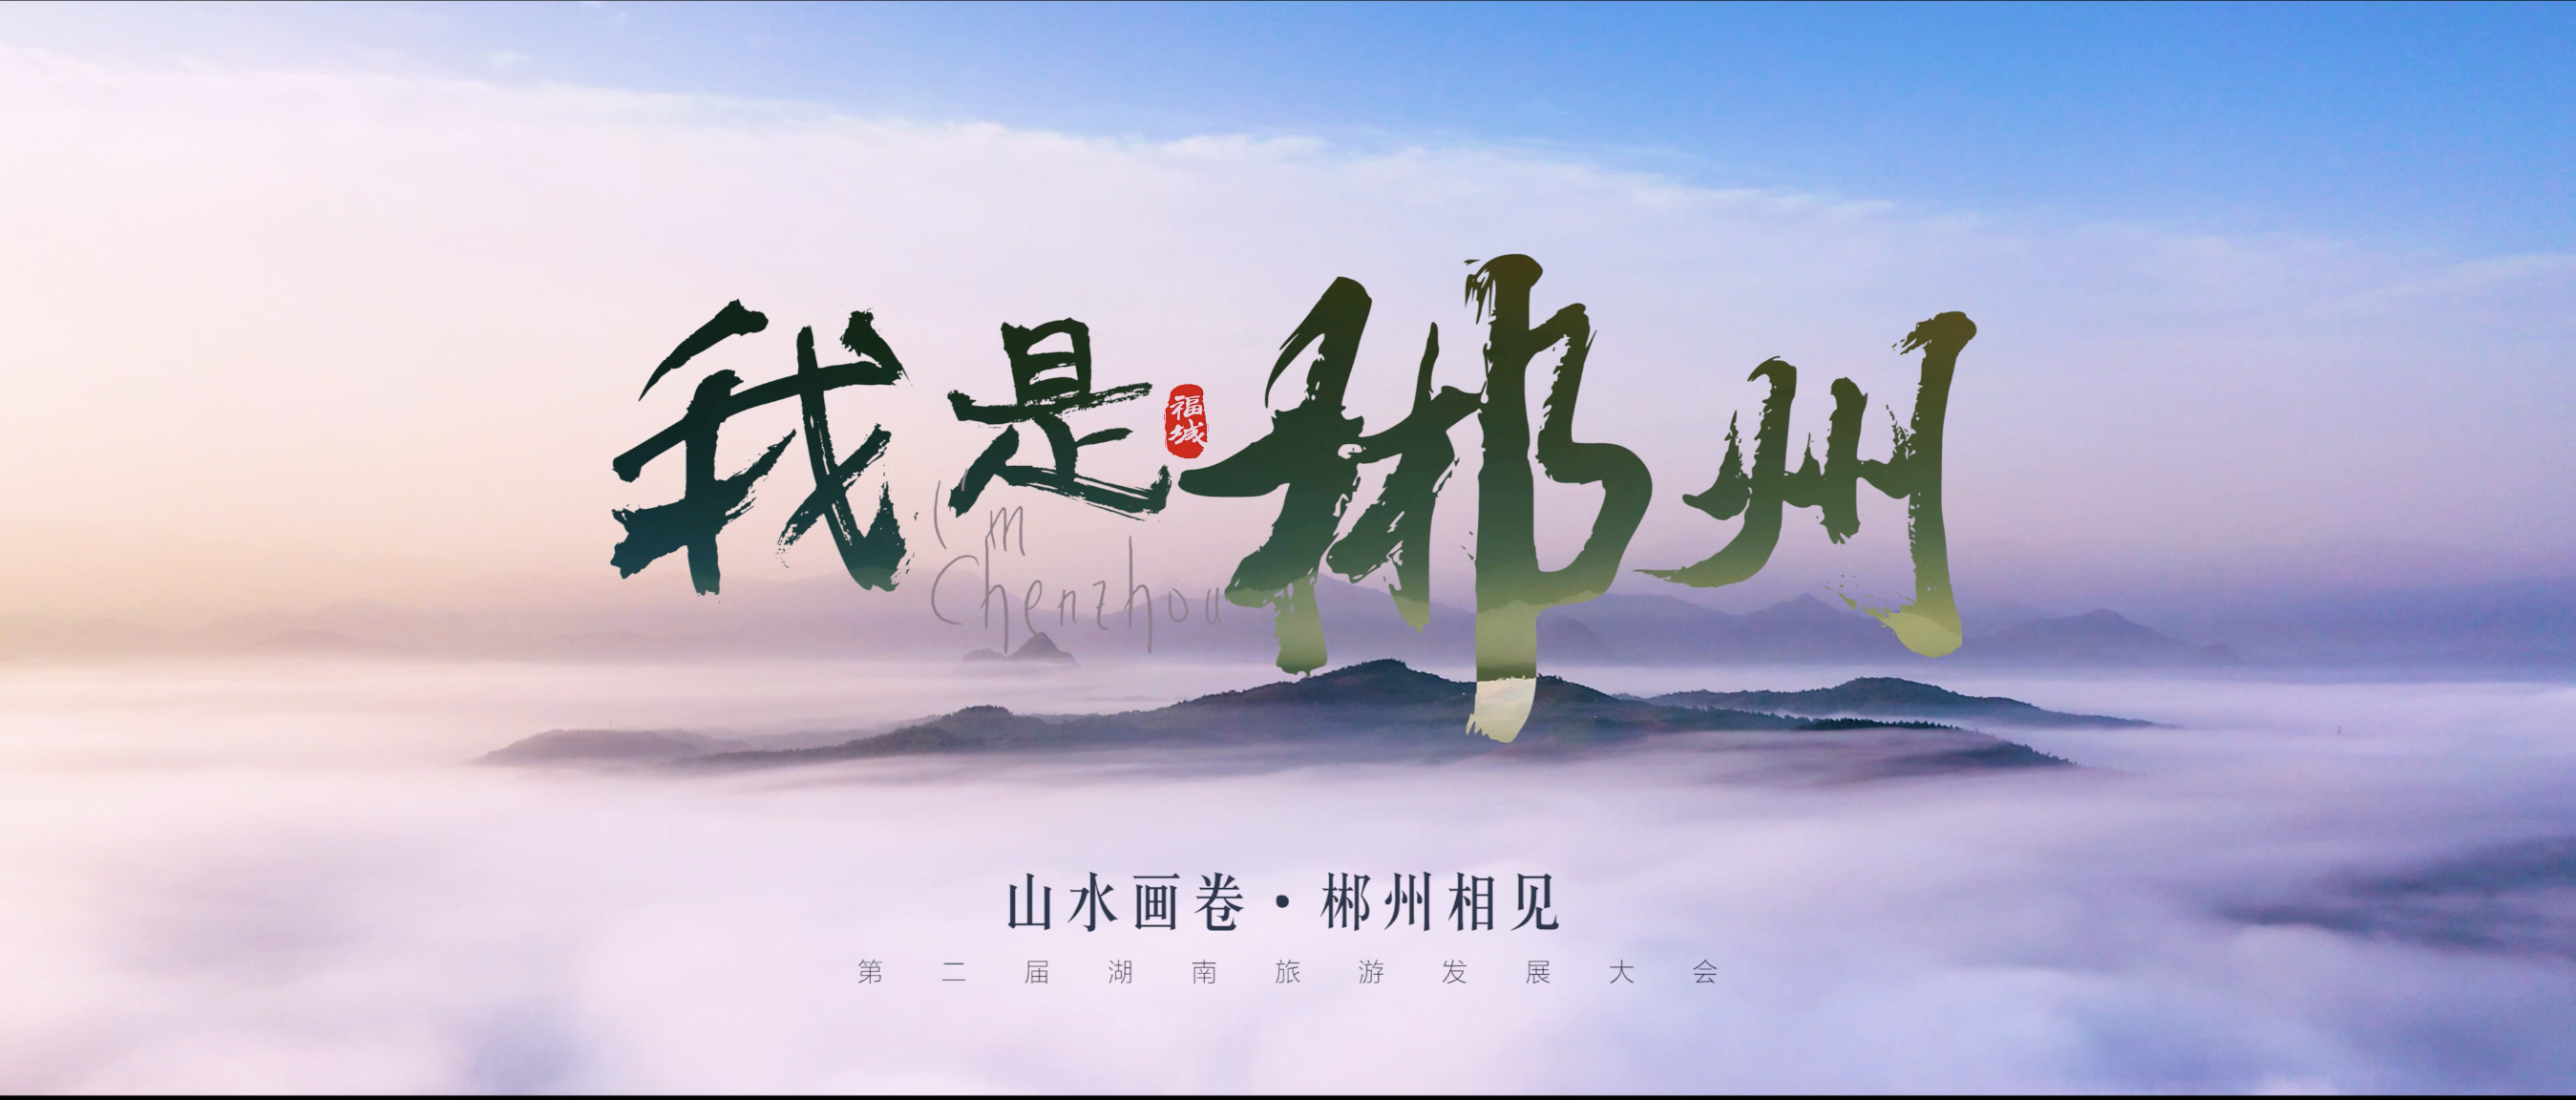 山水画卷，郴州相见！第二届湖南旅游发展大会郴州文旅形象宣传片：“我是郴州” 惊艳亮相！